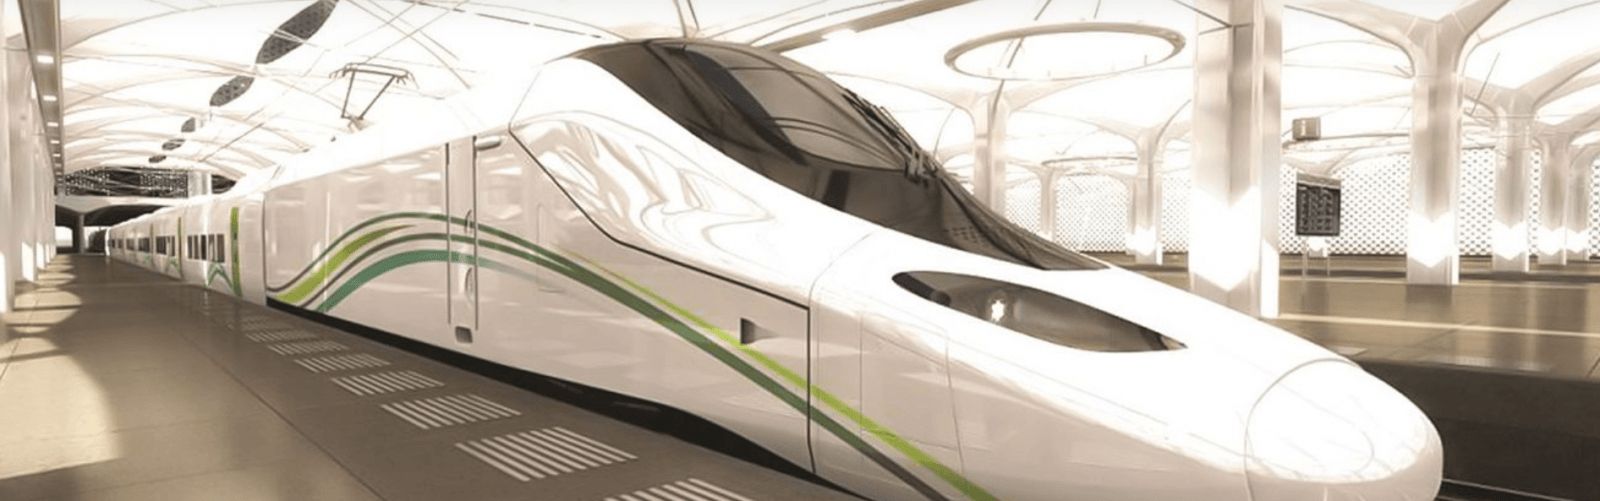 جدول رحلات قطار الحرمين مكة جدة المدينة وكيفية حجز تذاكر القطار إلكترونيا عبر موقع Hhr Sa